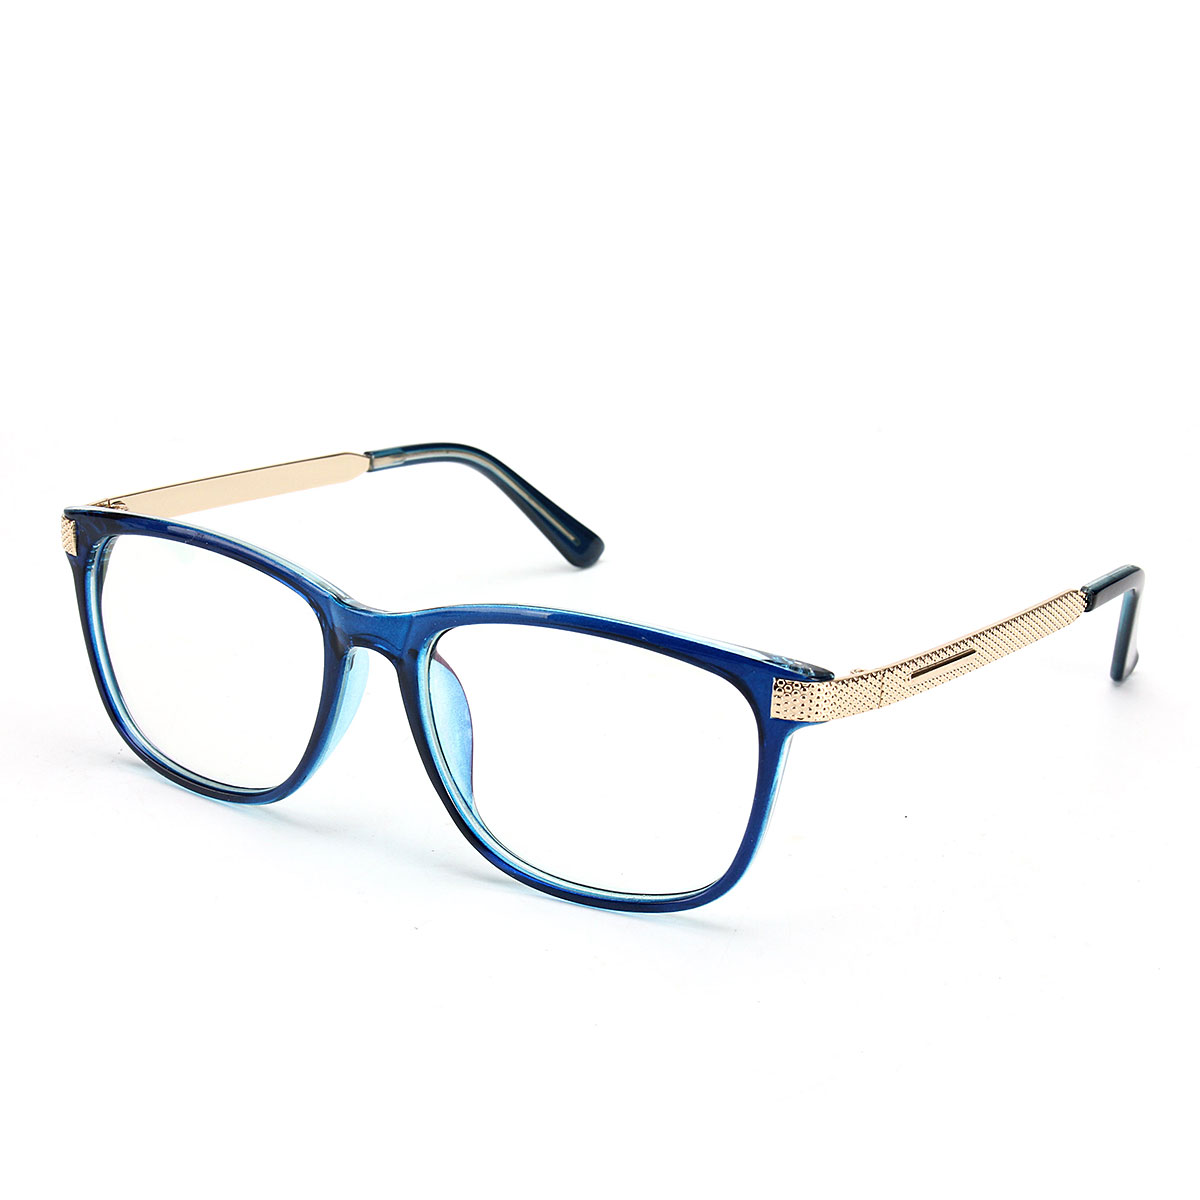 

Unisex Women Men Retro Eyeglass Frame Full-Rim Clear Lens Metal Plain Glasses